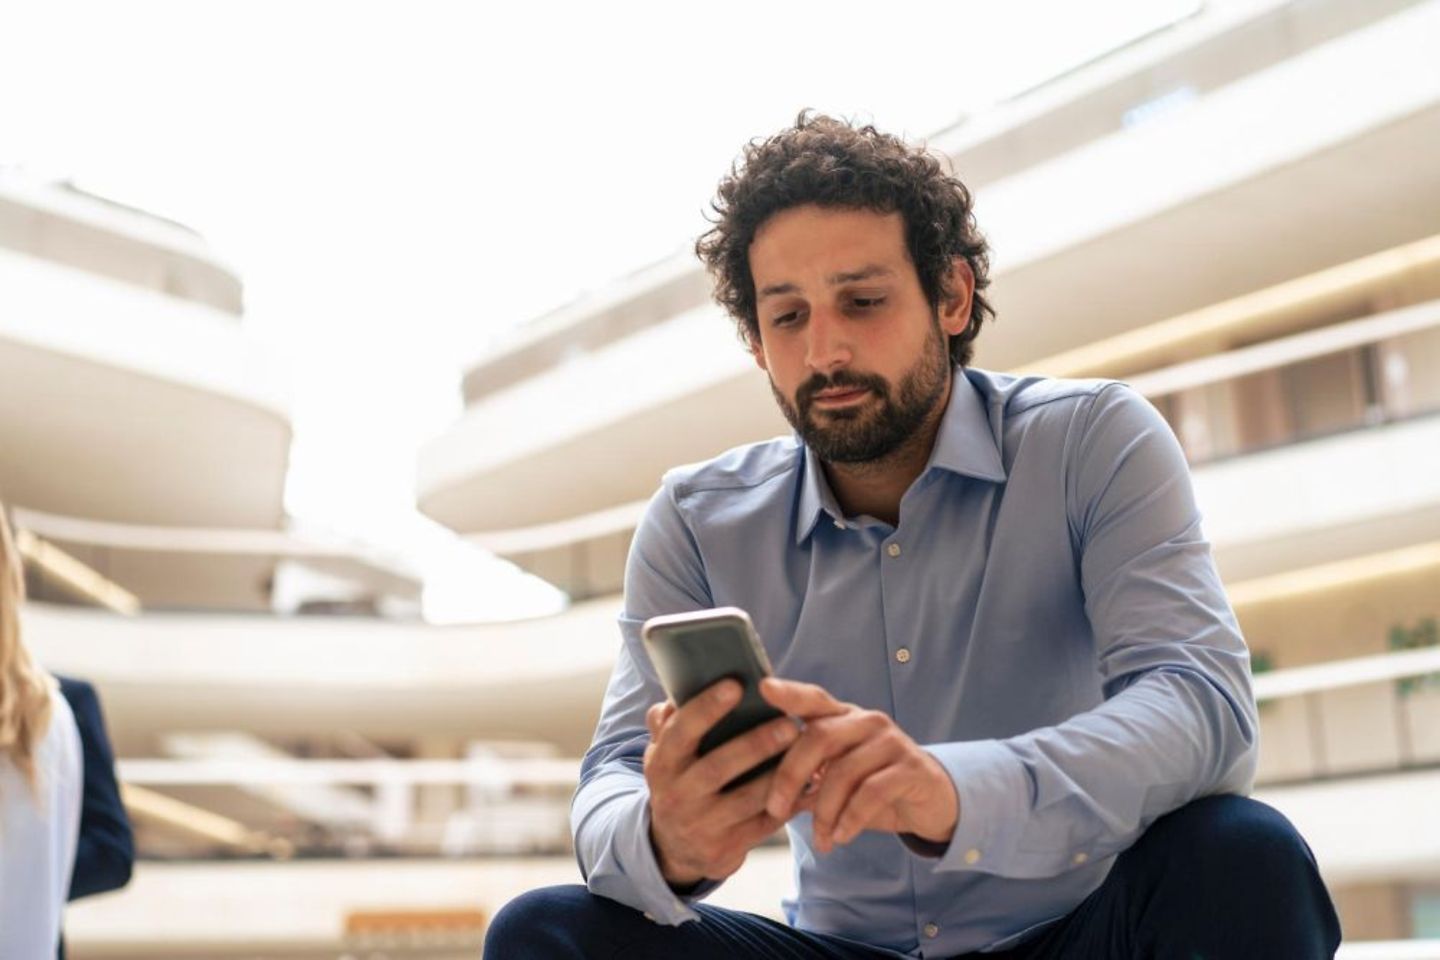 Un homme utilise son smartphone pour effectuer des opérations bancaires en ligne dans un environnement de bureau